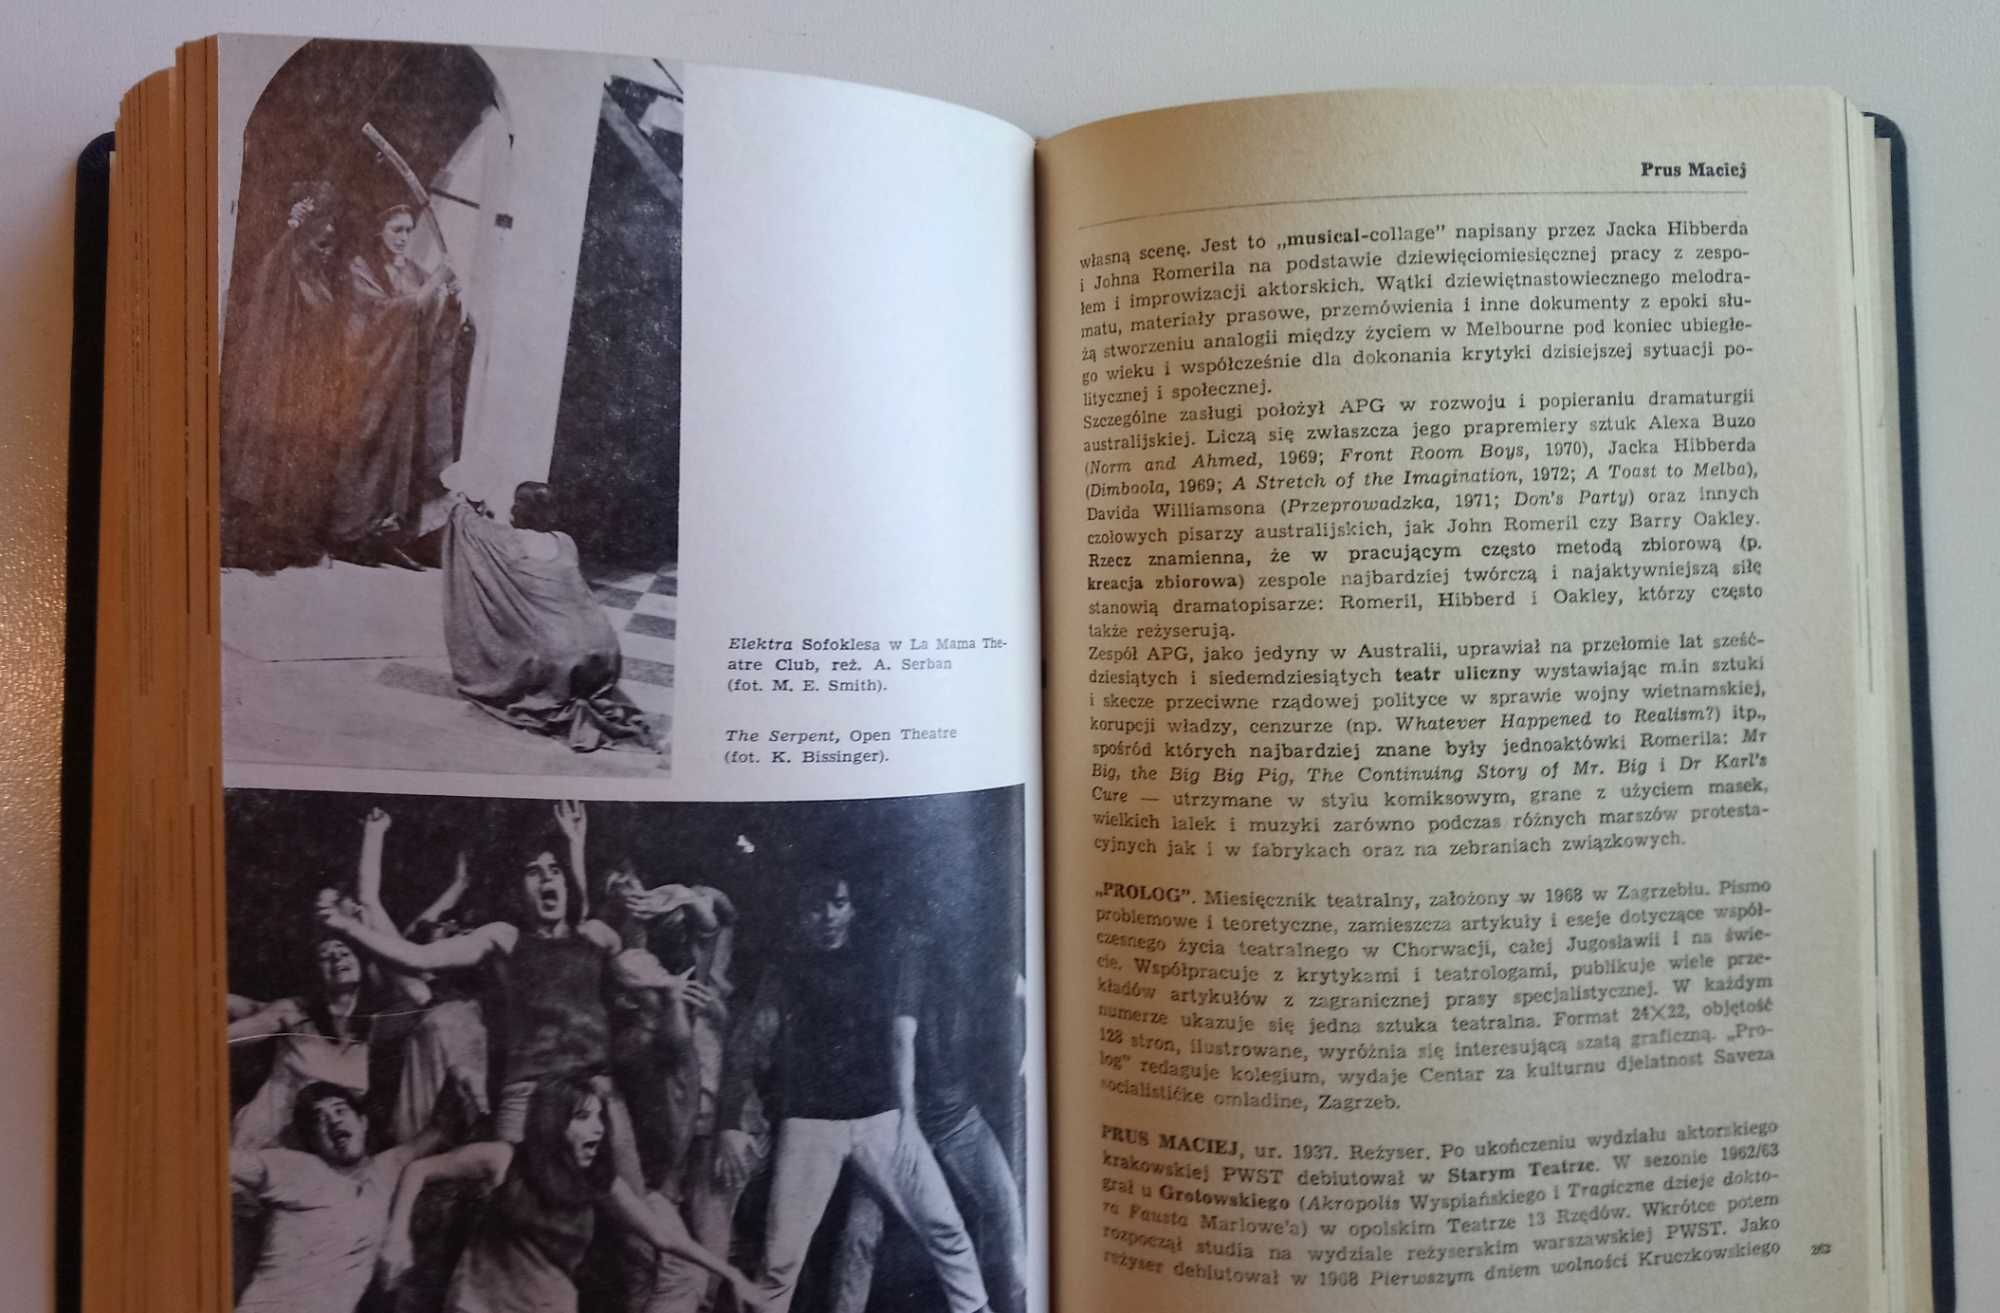 "Słownik współczesnego teatru" - M. Semil, E. Wysińska - 1989